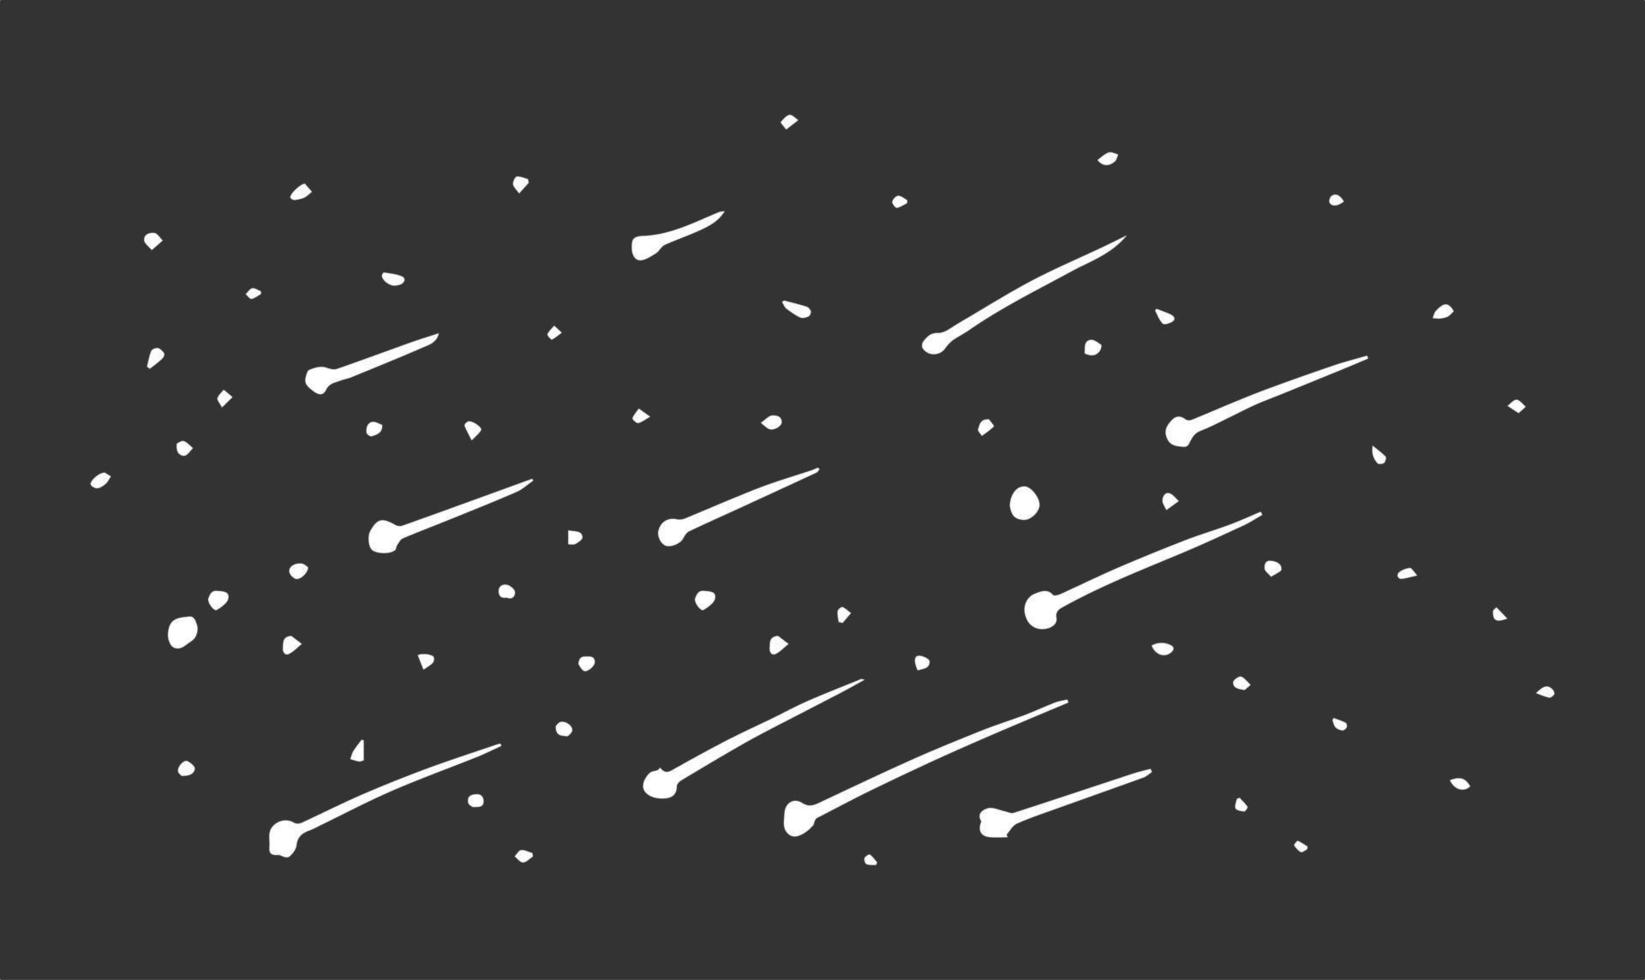 meteor shower at night, vector illustration.